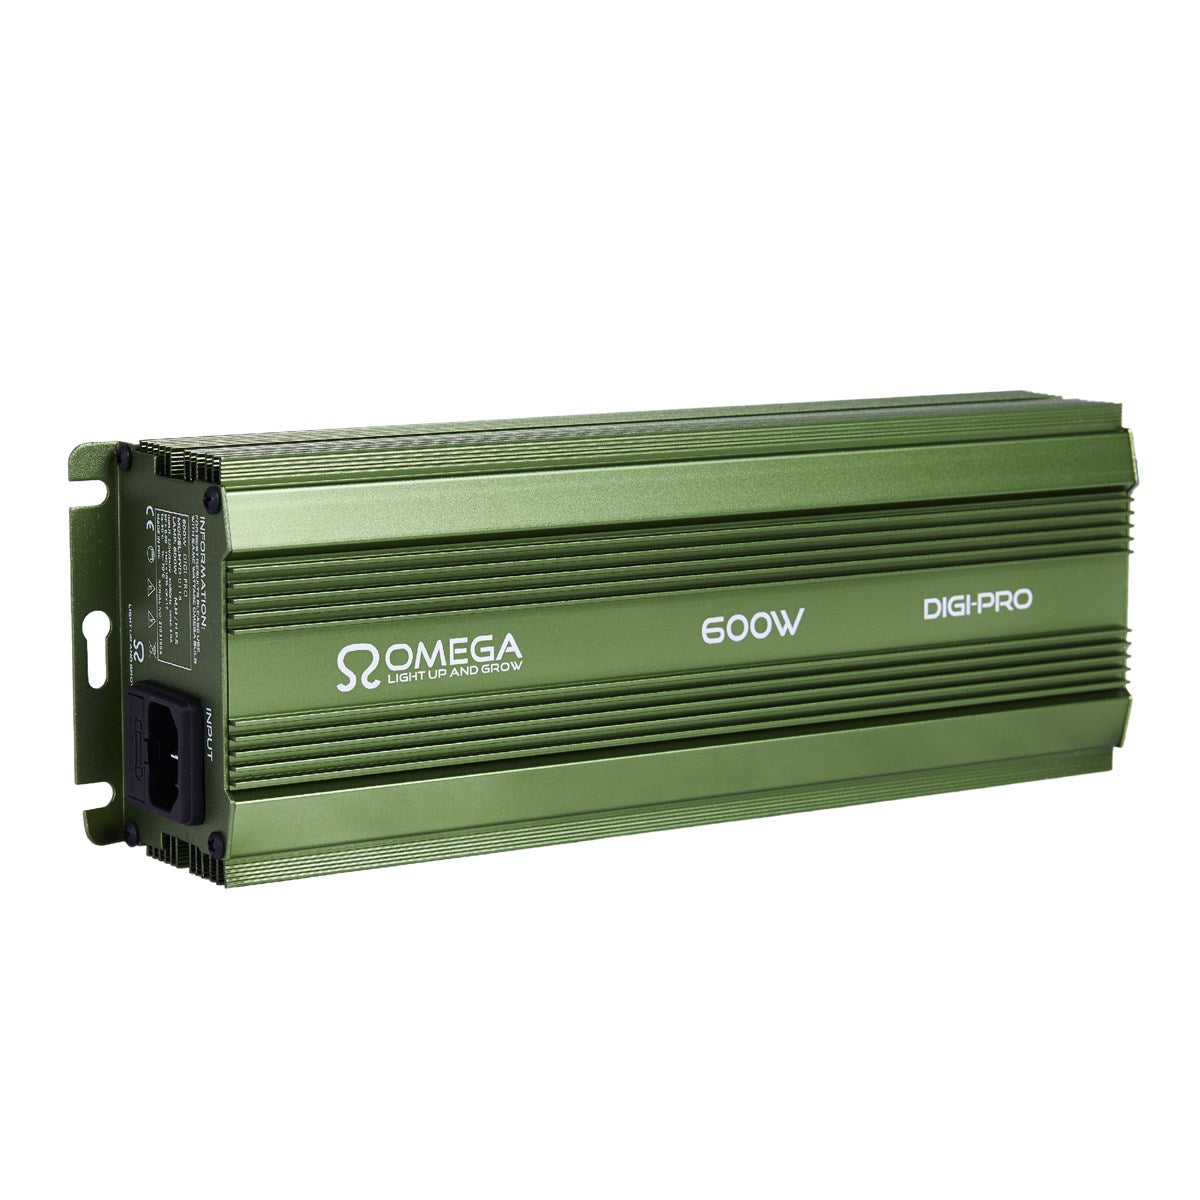 Omega 600W Digi-Pro digitale dimbare ballast